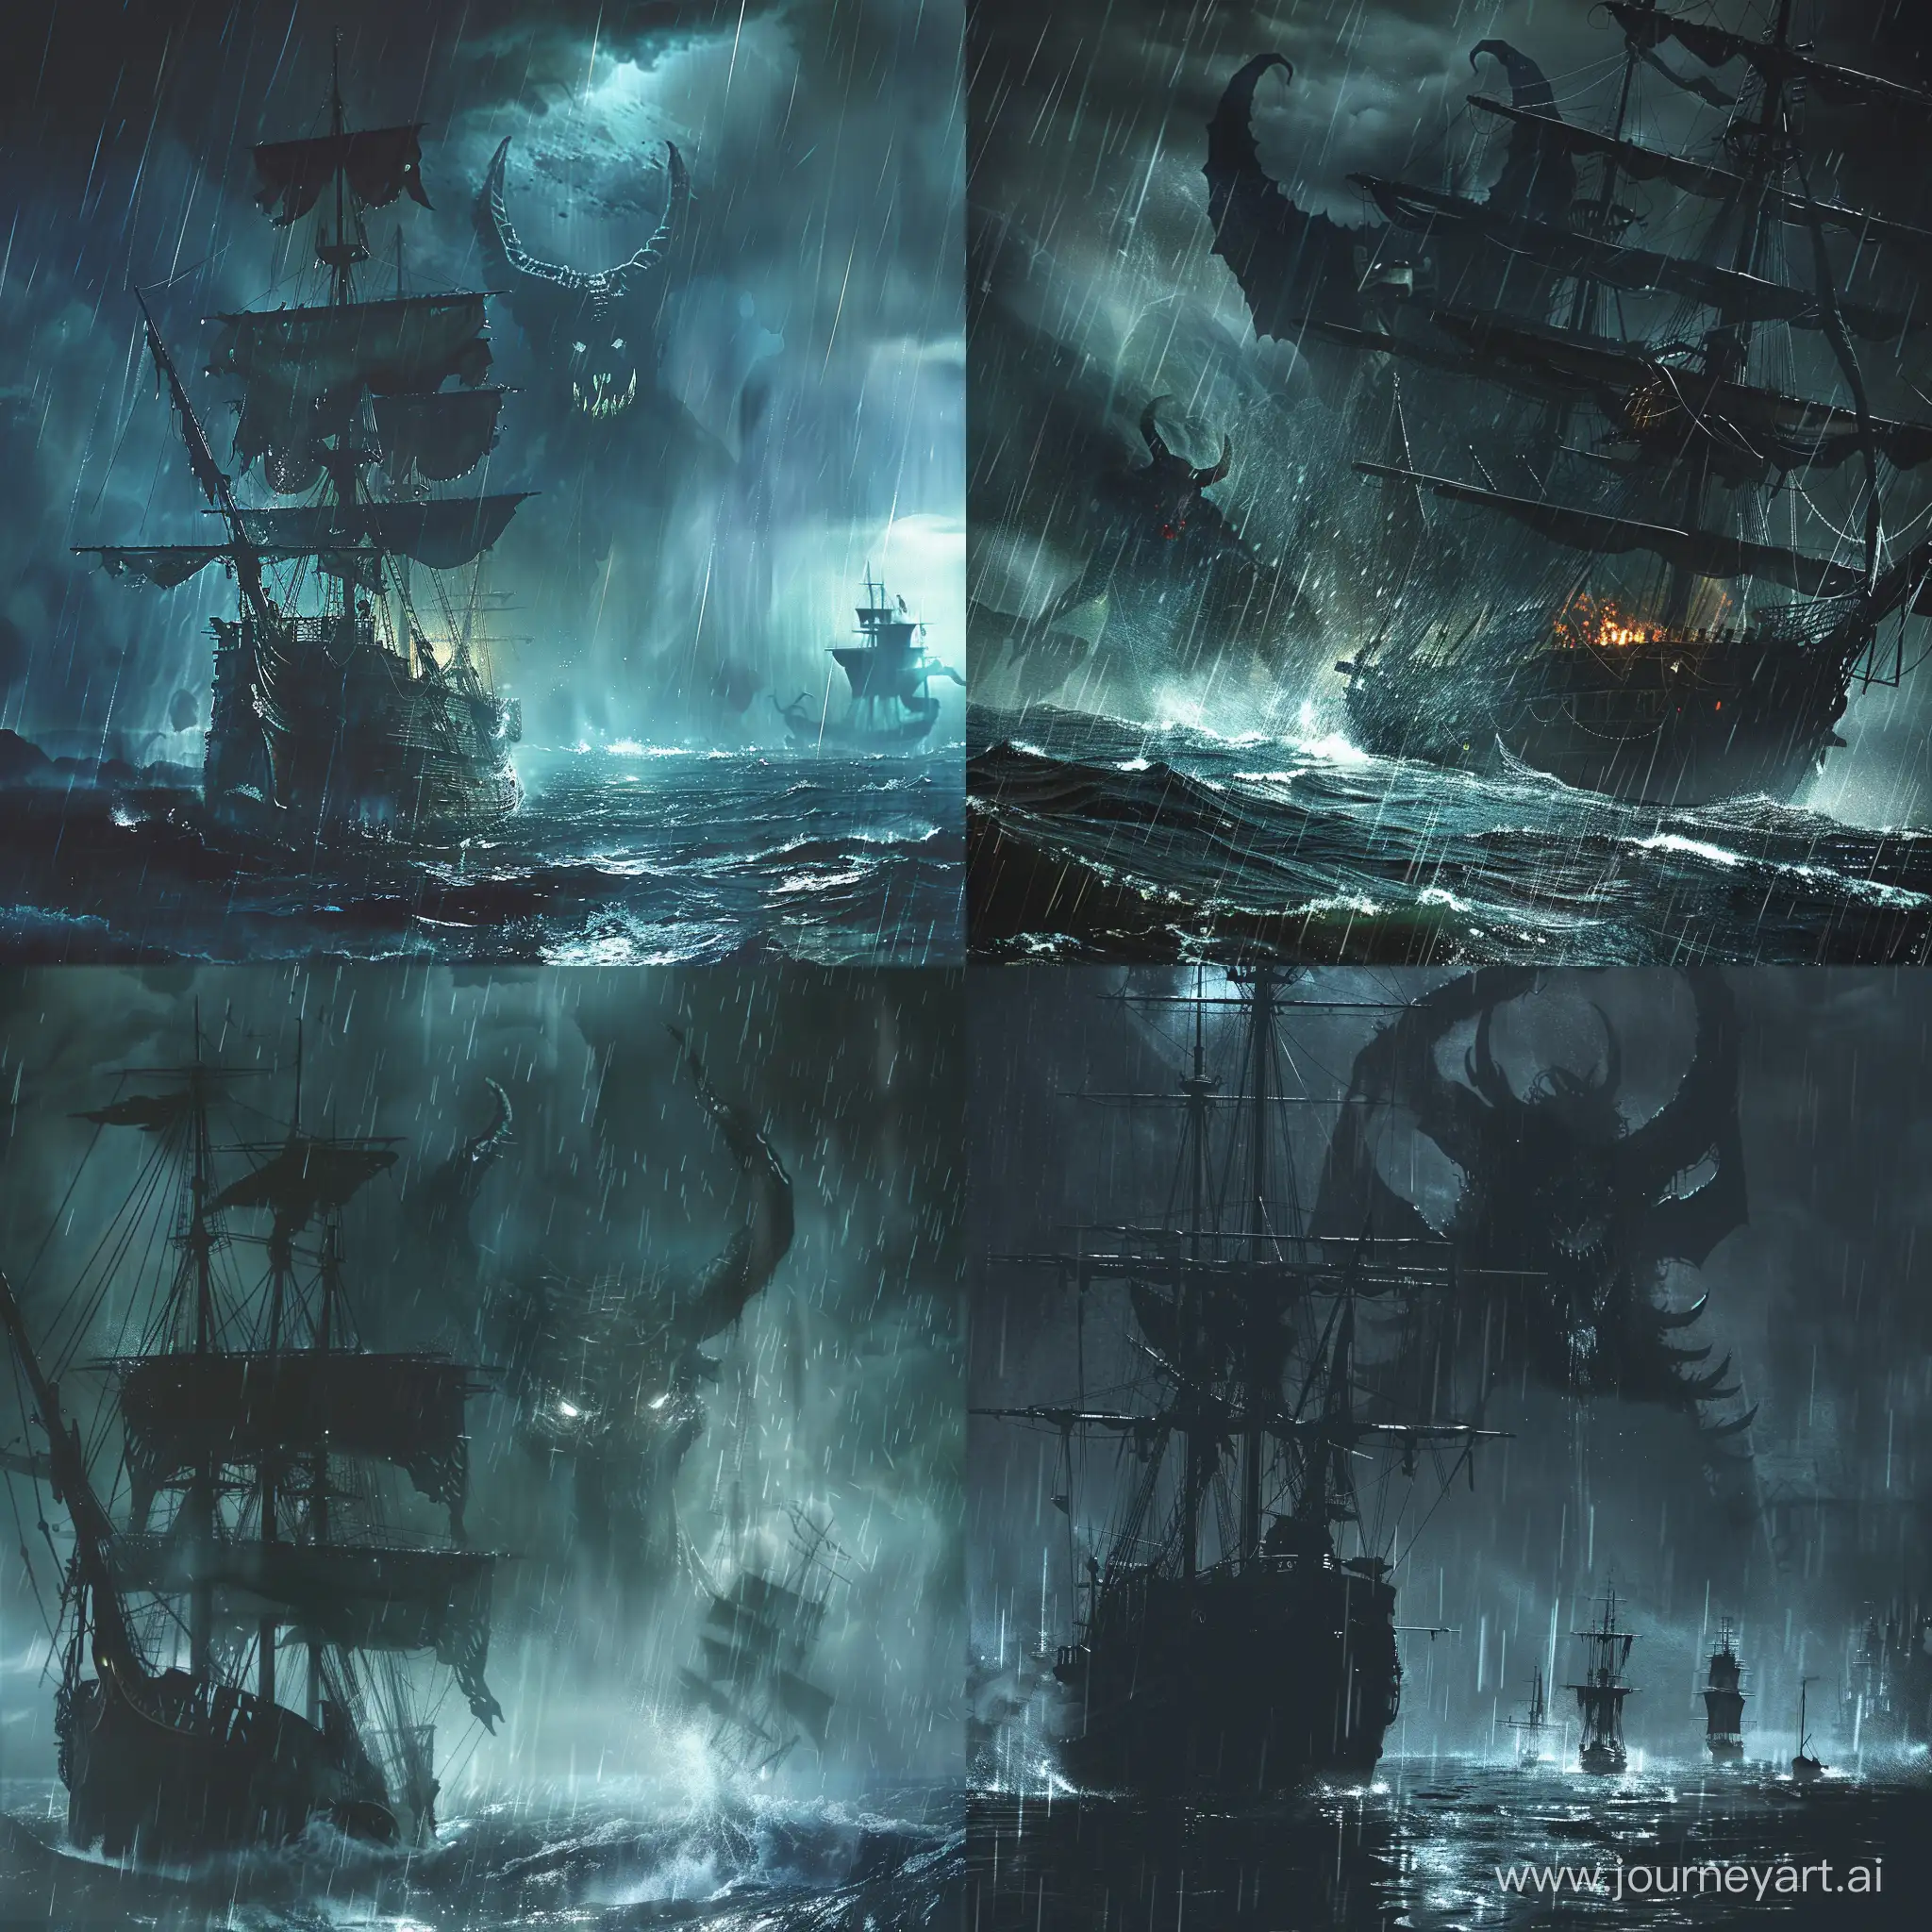 Ночное море со старым кораблем, идет дождь, а за кораблем большой дьявол.